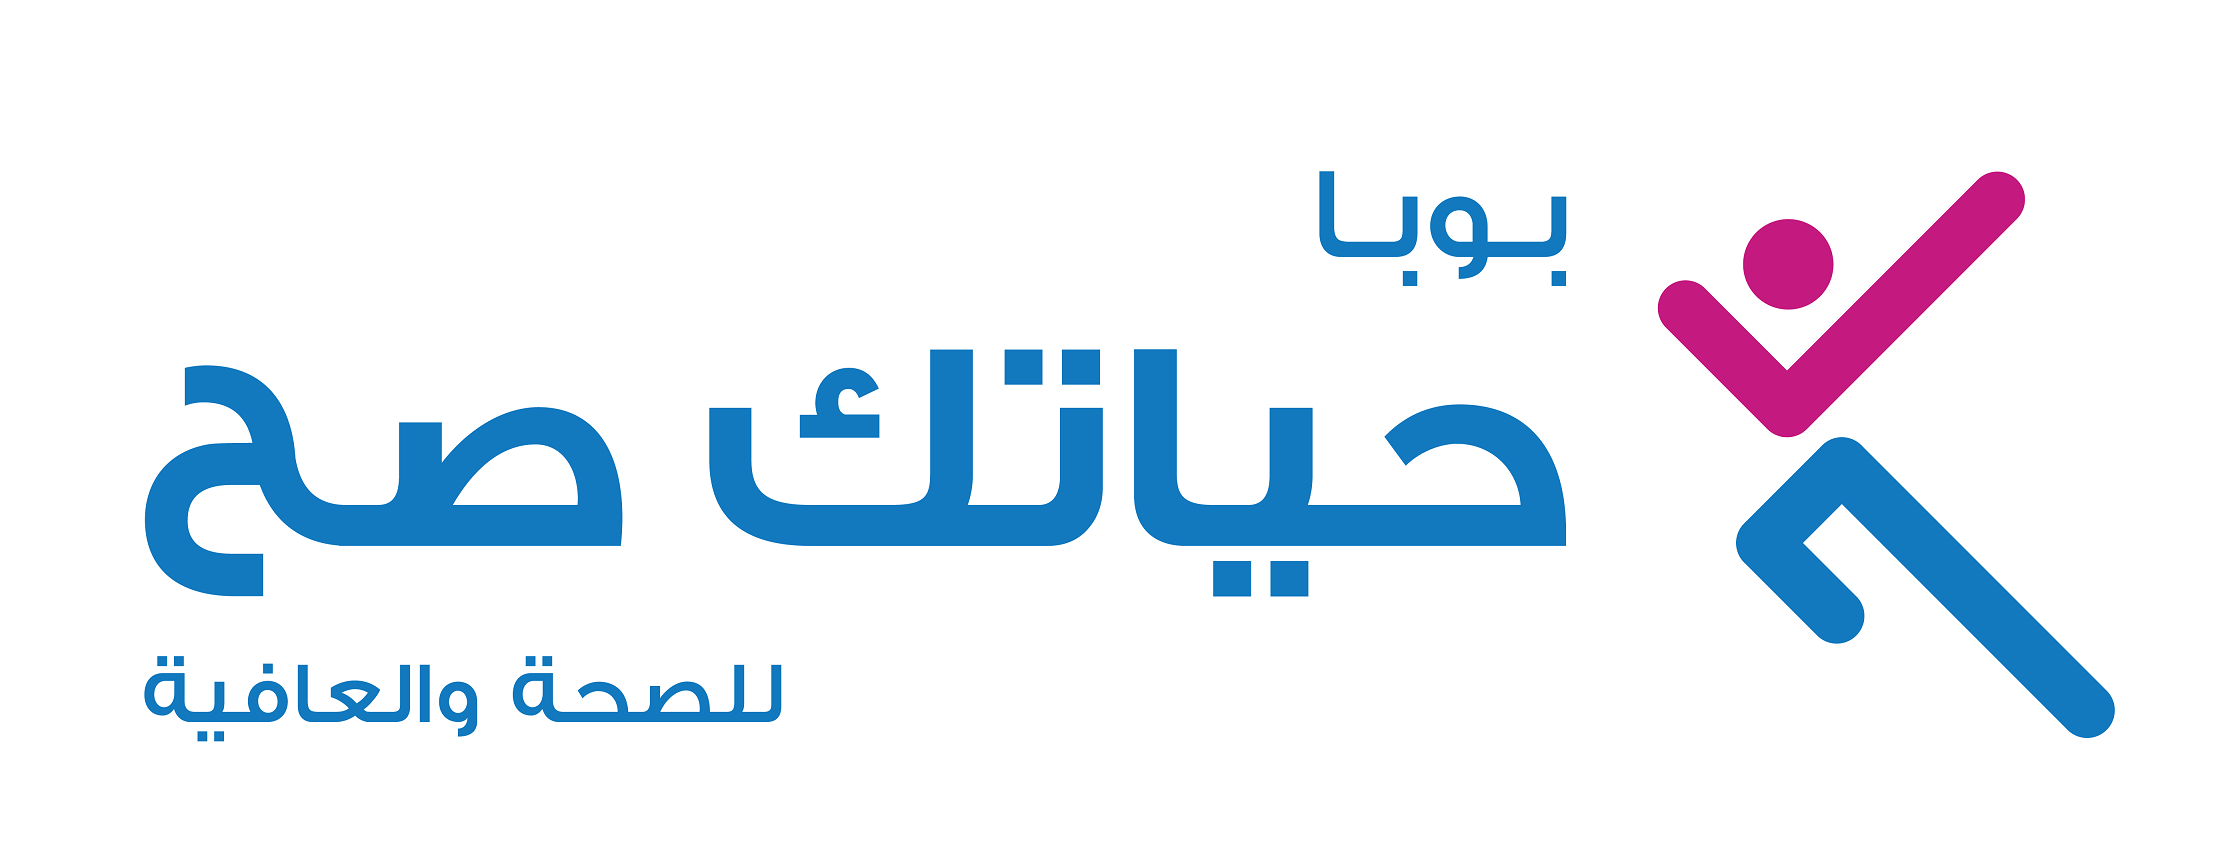 “بوبا العربية” تدشن فعالية “حياتك صح” في جدة 21-22 يوليو